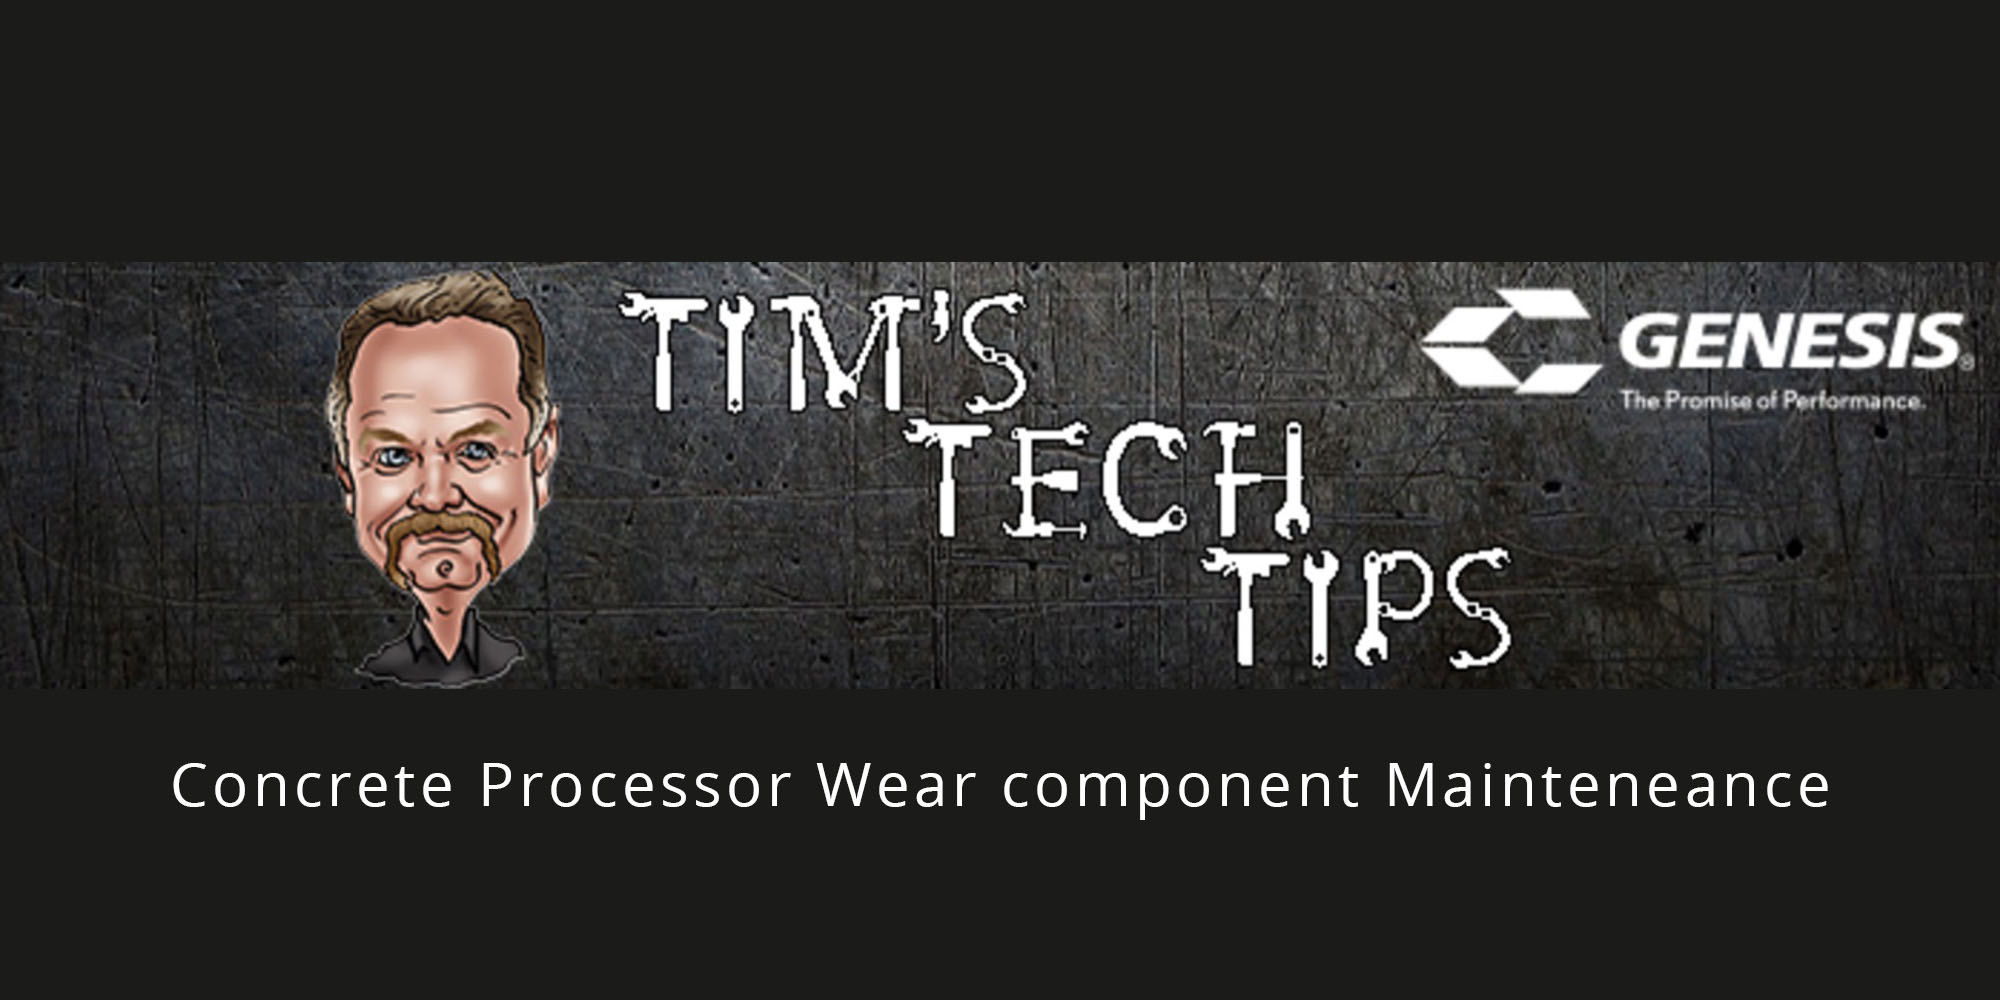 Tim's Tech Tips: Concrete Processor Wear Component Maintenance